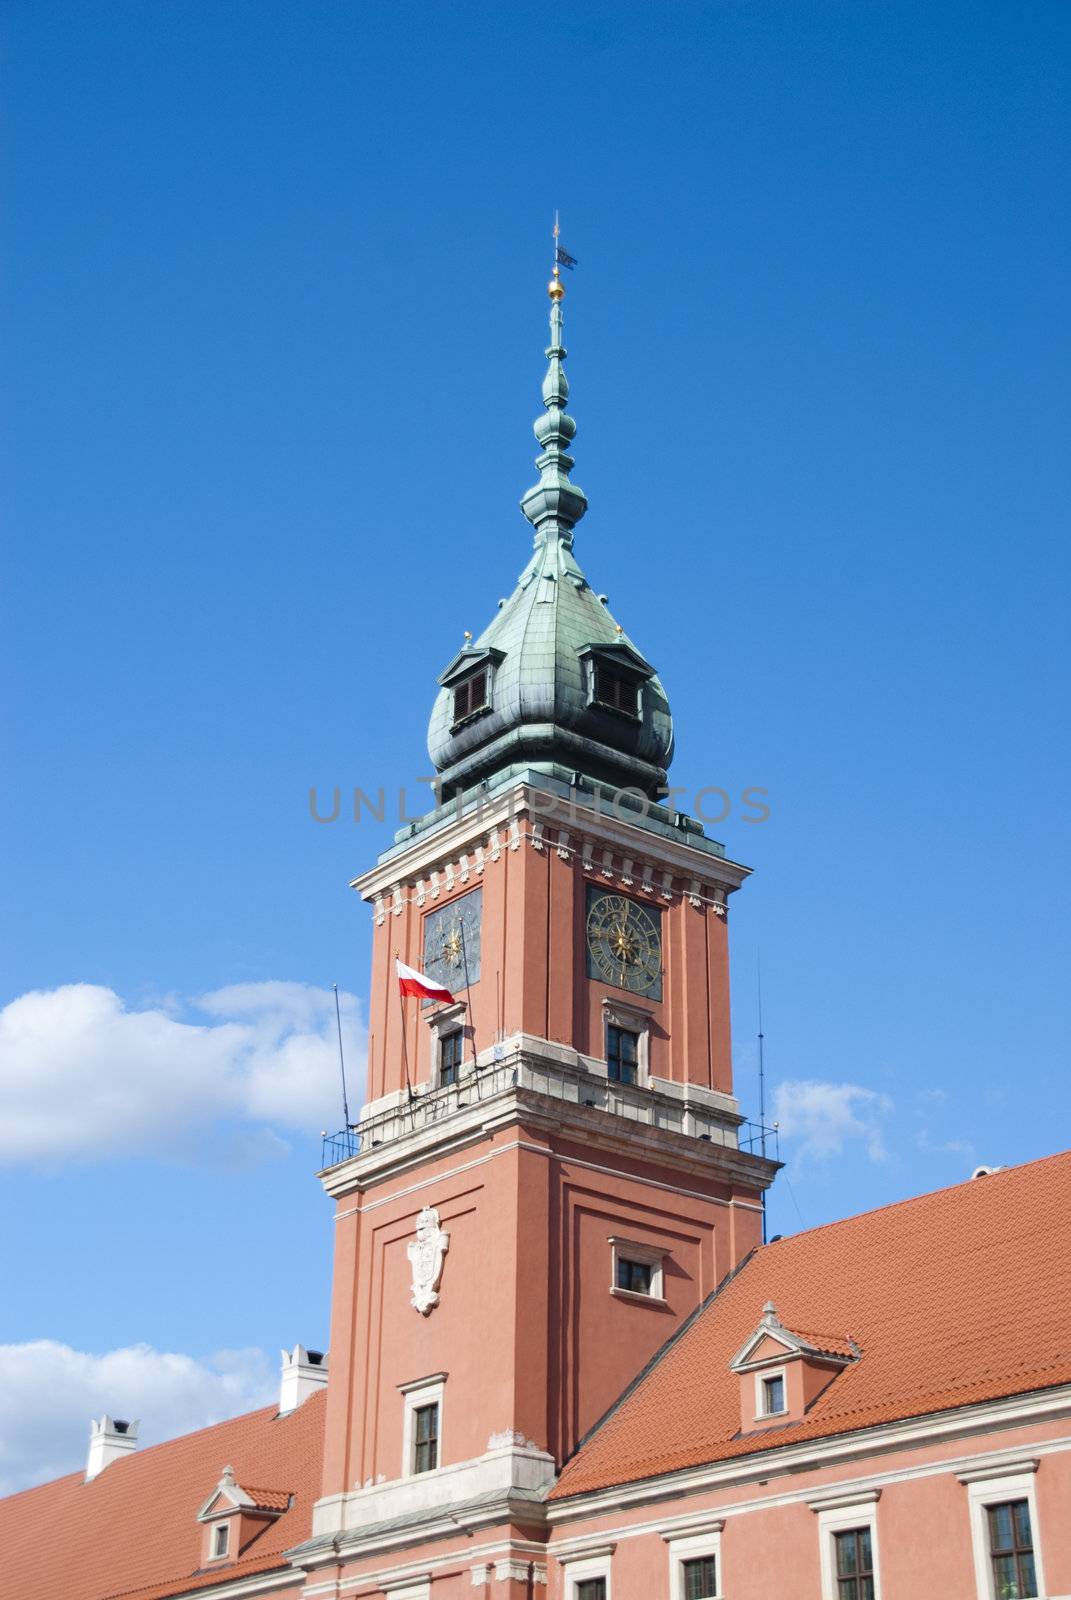 The clocktower of the Royal Palac by wojciechkozlowski